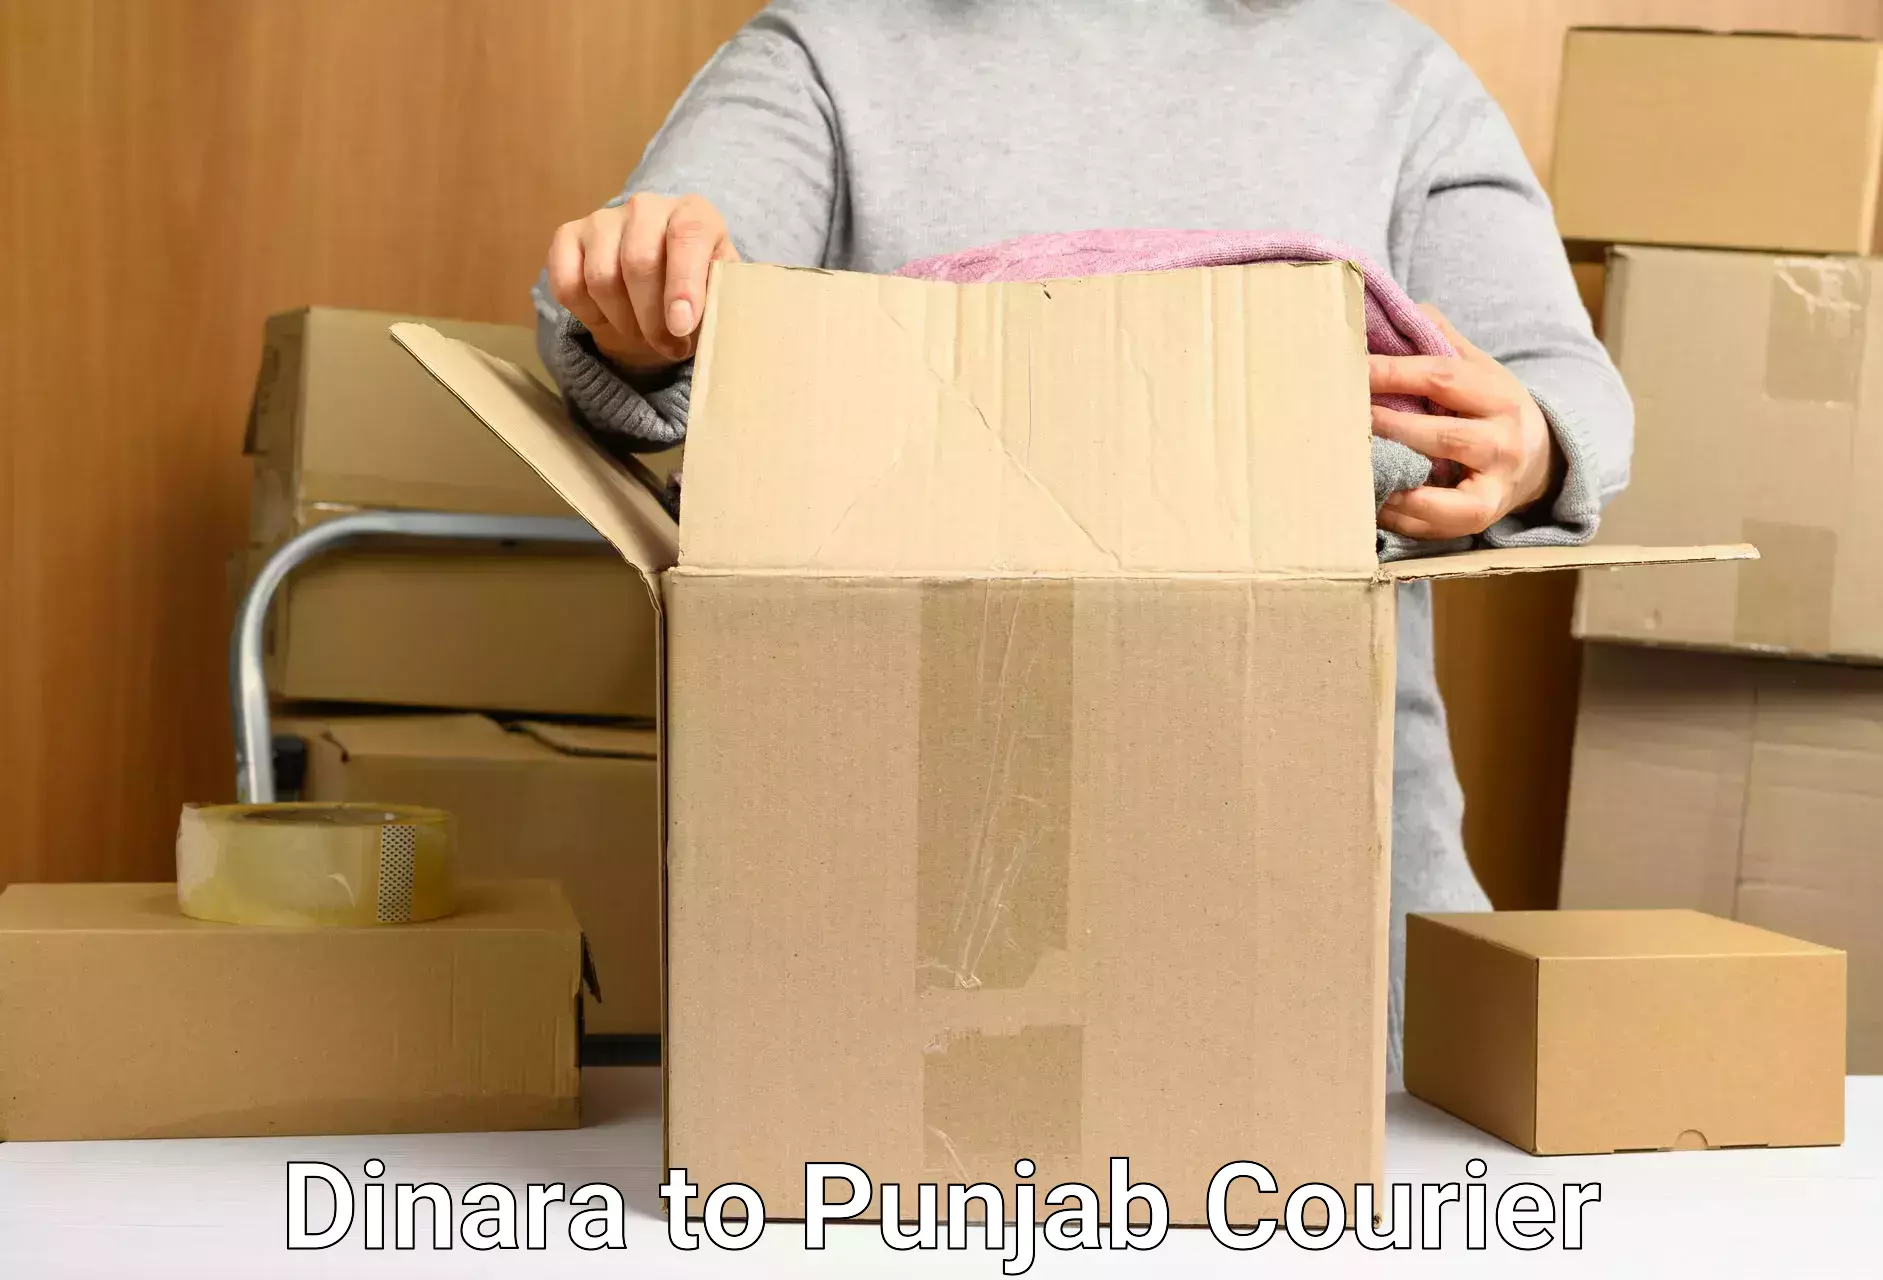 Custom courier solutions Dinara to Jhunir